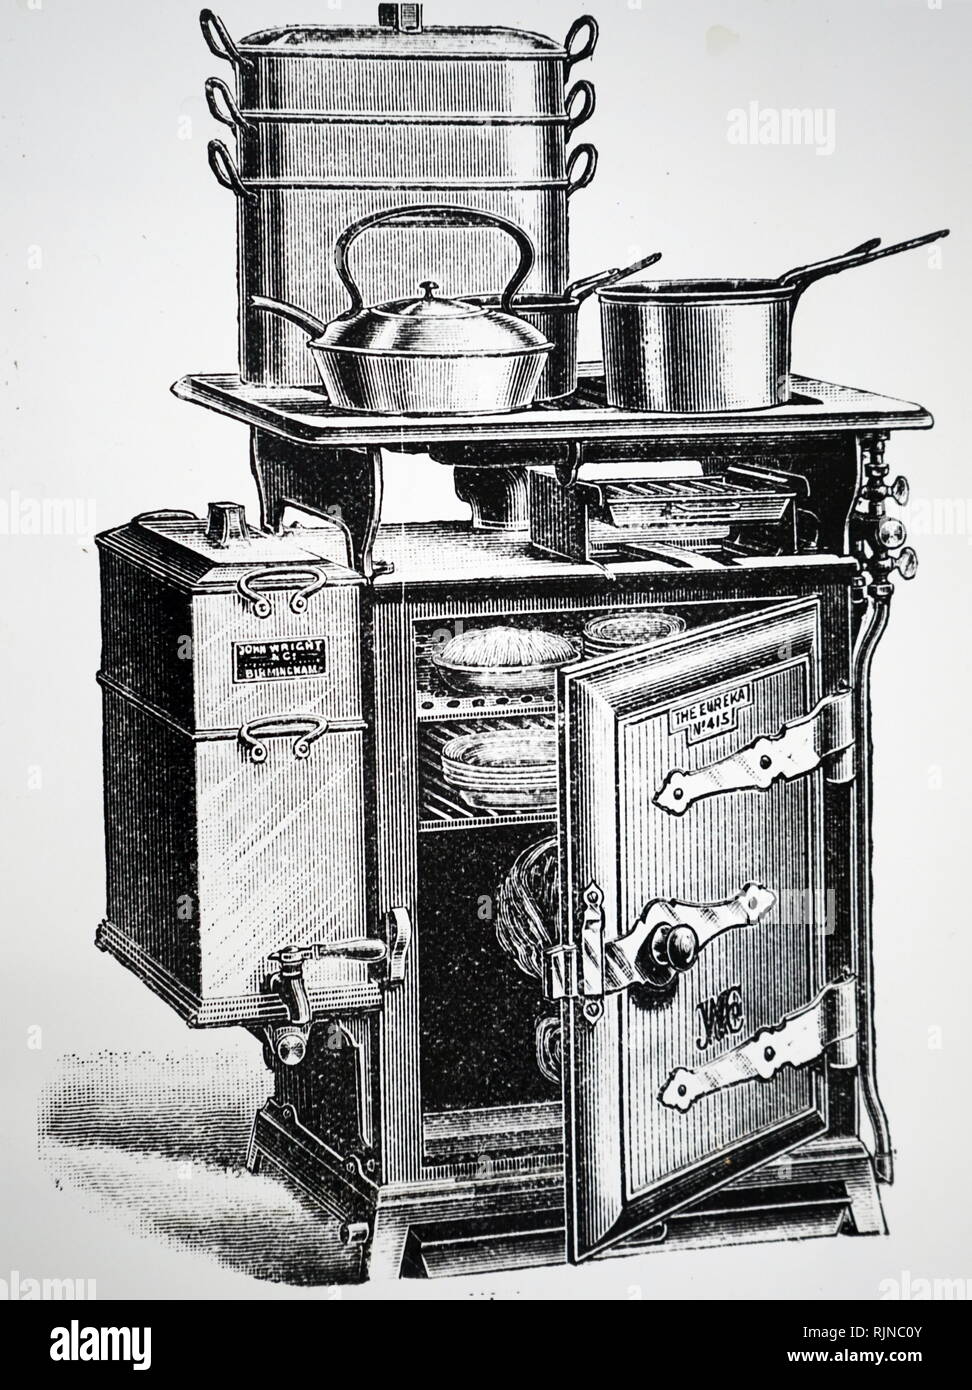 Ein kupferstich mit der Darstellung der Eureka Gas Herd von der John Wright & Co., Birmingham, wo ein Warmwasserbereiter auf der einen Seite der Herd enthalten. Vom 19. Jahrhundert Stockfoto